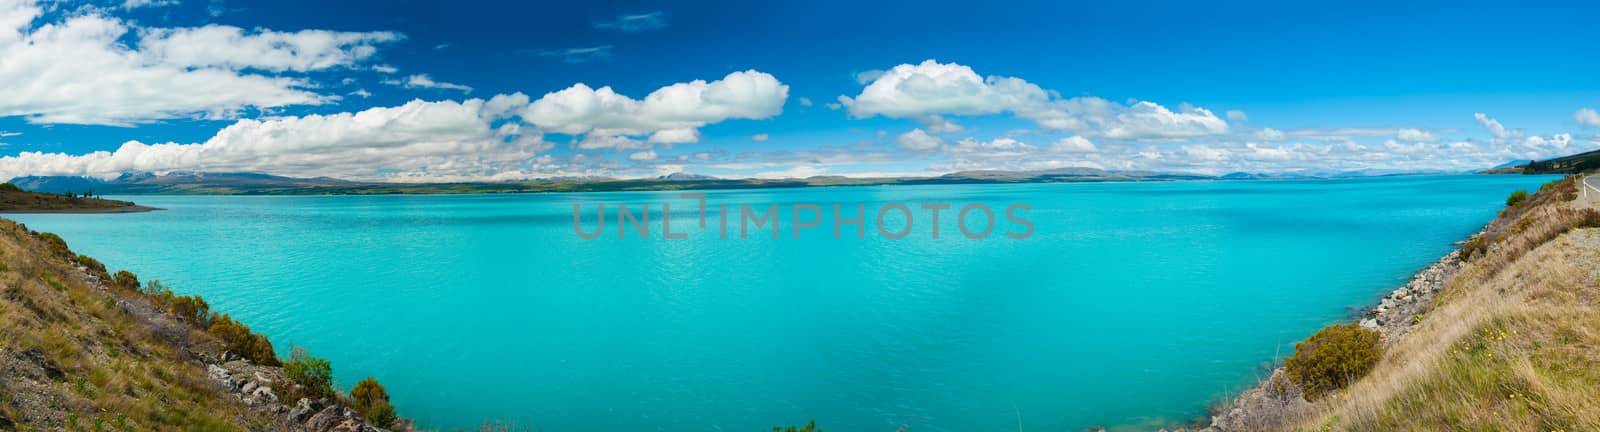 Lake Pukaki by fyletto